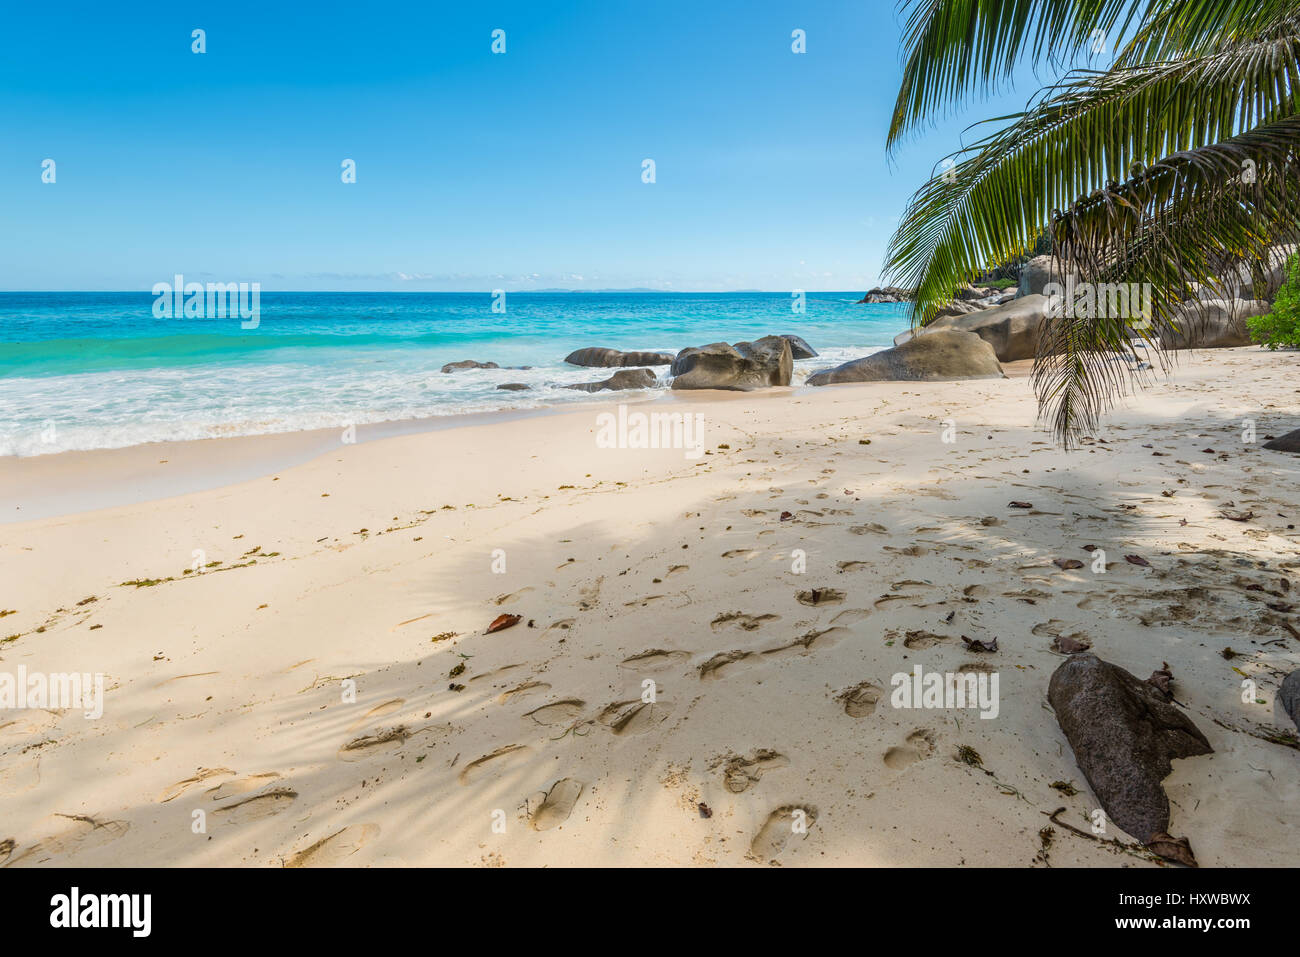 Spektakuläre Carana Beach am nördlichen Ende der Insel Mahé, Seychellen. Schönen sonnigen Strand. Blick auf schönen tropischen Strand mit Palmen rund um. Urlaub Stockfoto